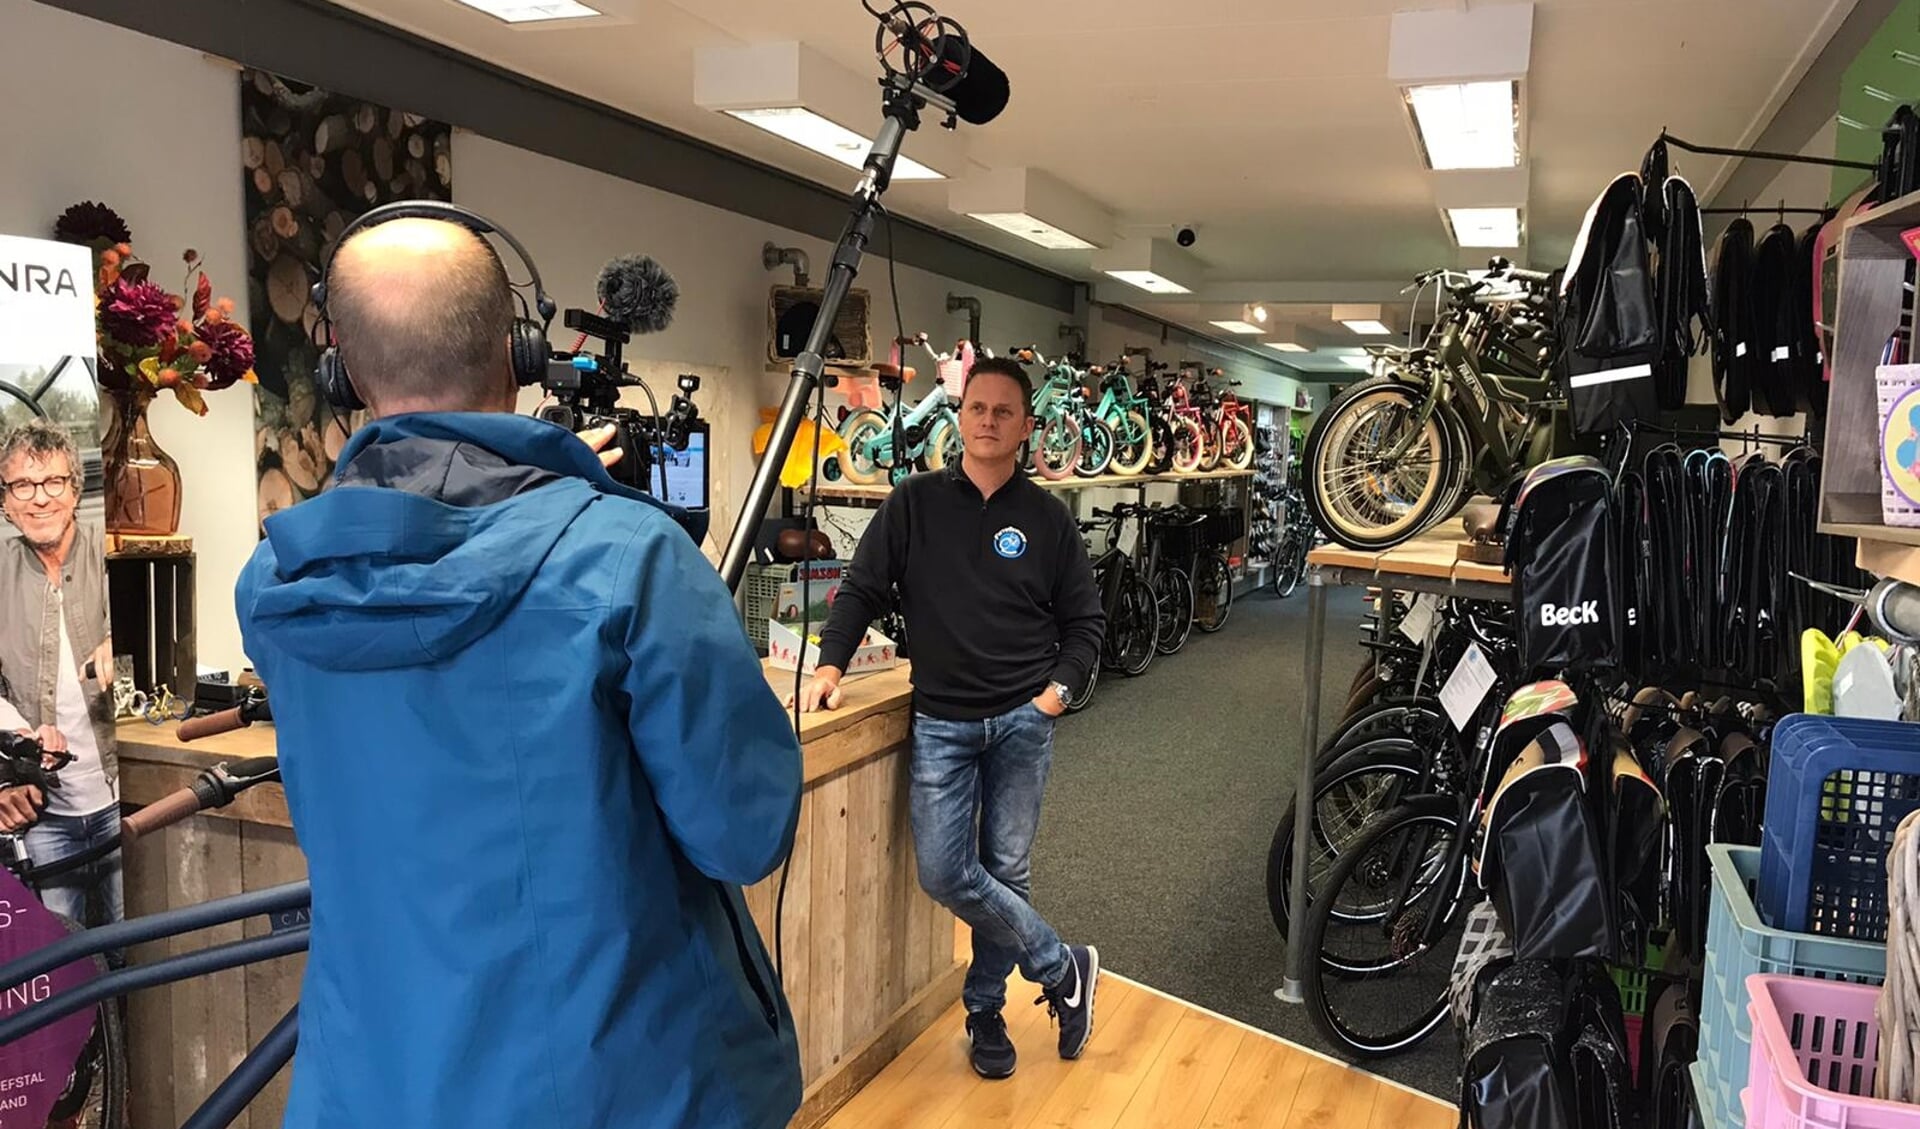 De camera bracht een bezoek aan de aangesloten fietsenhandelaar van Patrick Venema in Schagen die fietsbellen sponsort